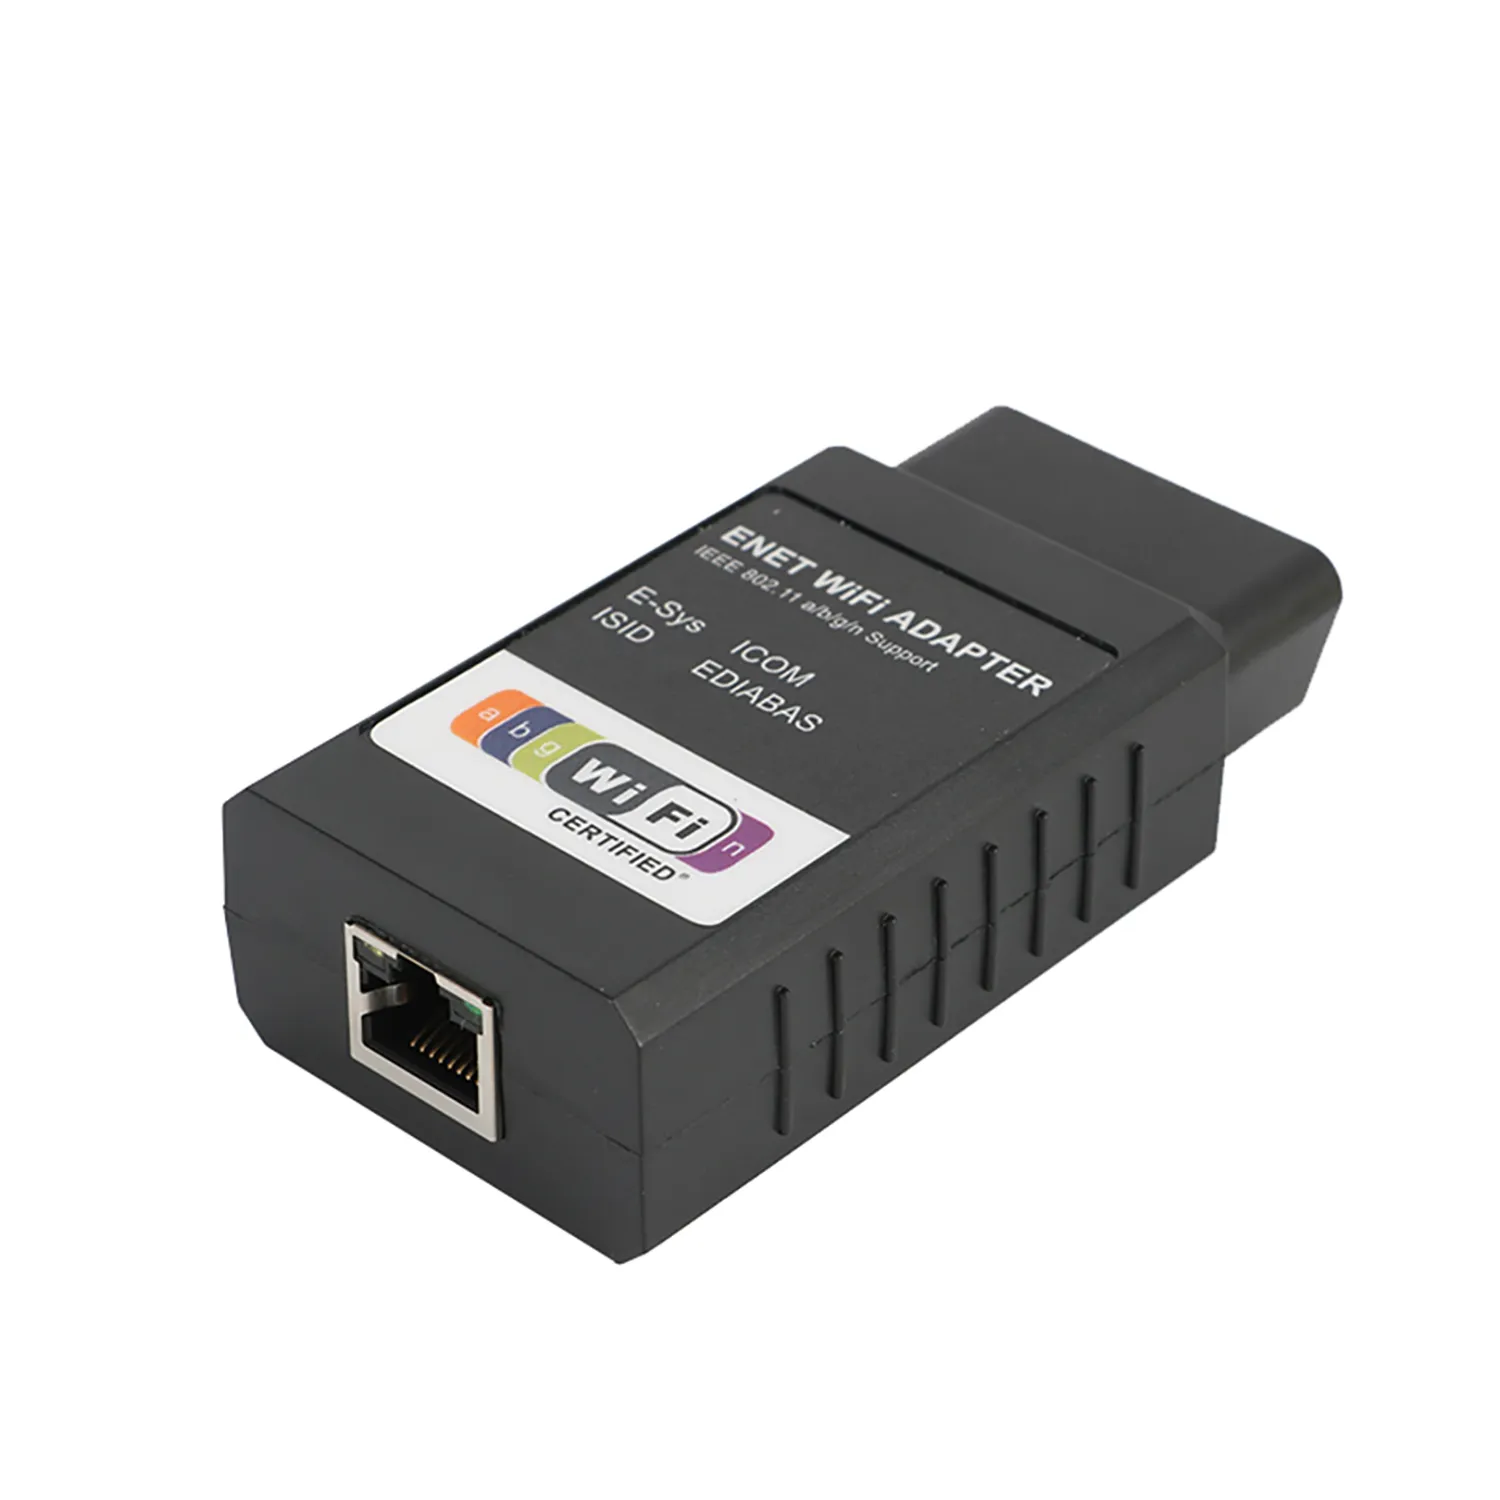 Alat diagnostik pemindai, Adapter Wifi OBD2 Coding Enet adaptor Wifi alat pemrograman untuk BMW CarPlay E-SYS ICOM Enet Adapter